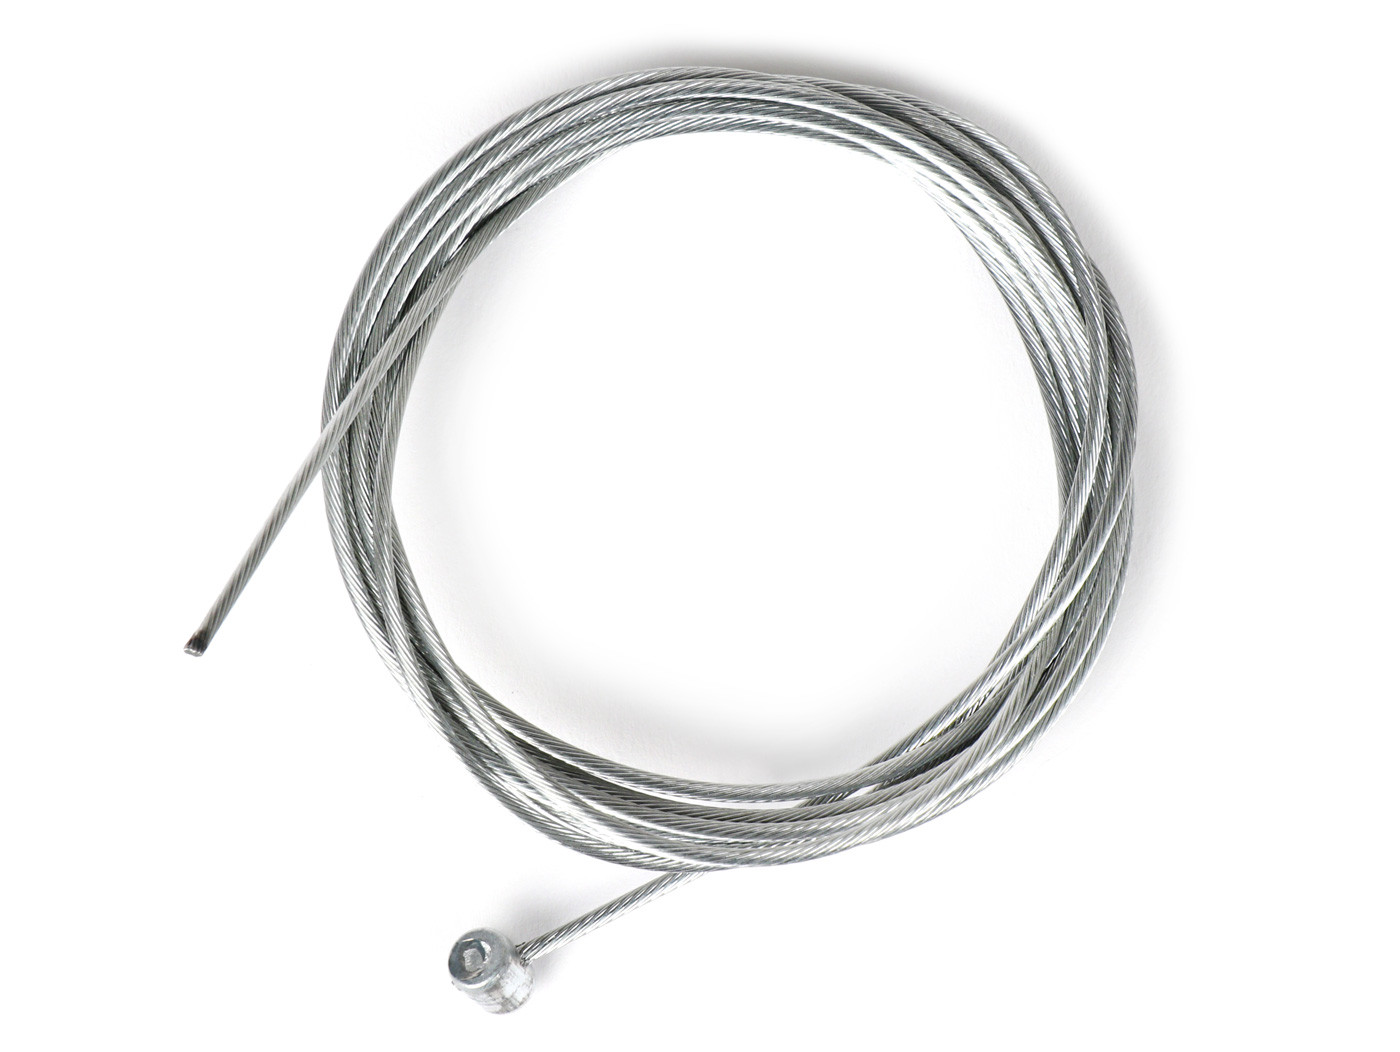 Kábel univerzális belső Ř=1,6mm x 2000mm, mellbimbó Ř=5,5mm x 7mm csavart váltókábelként használatos.